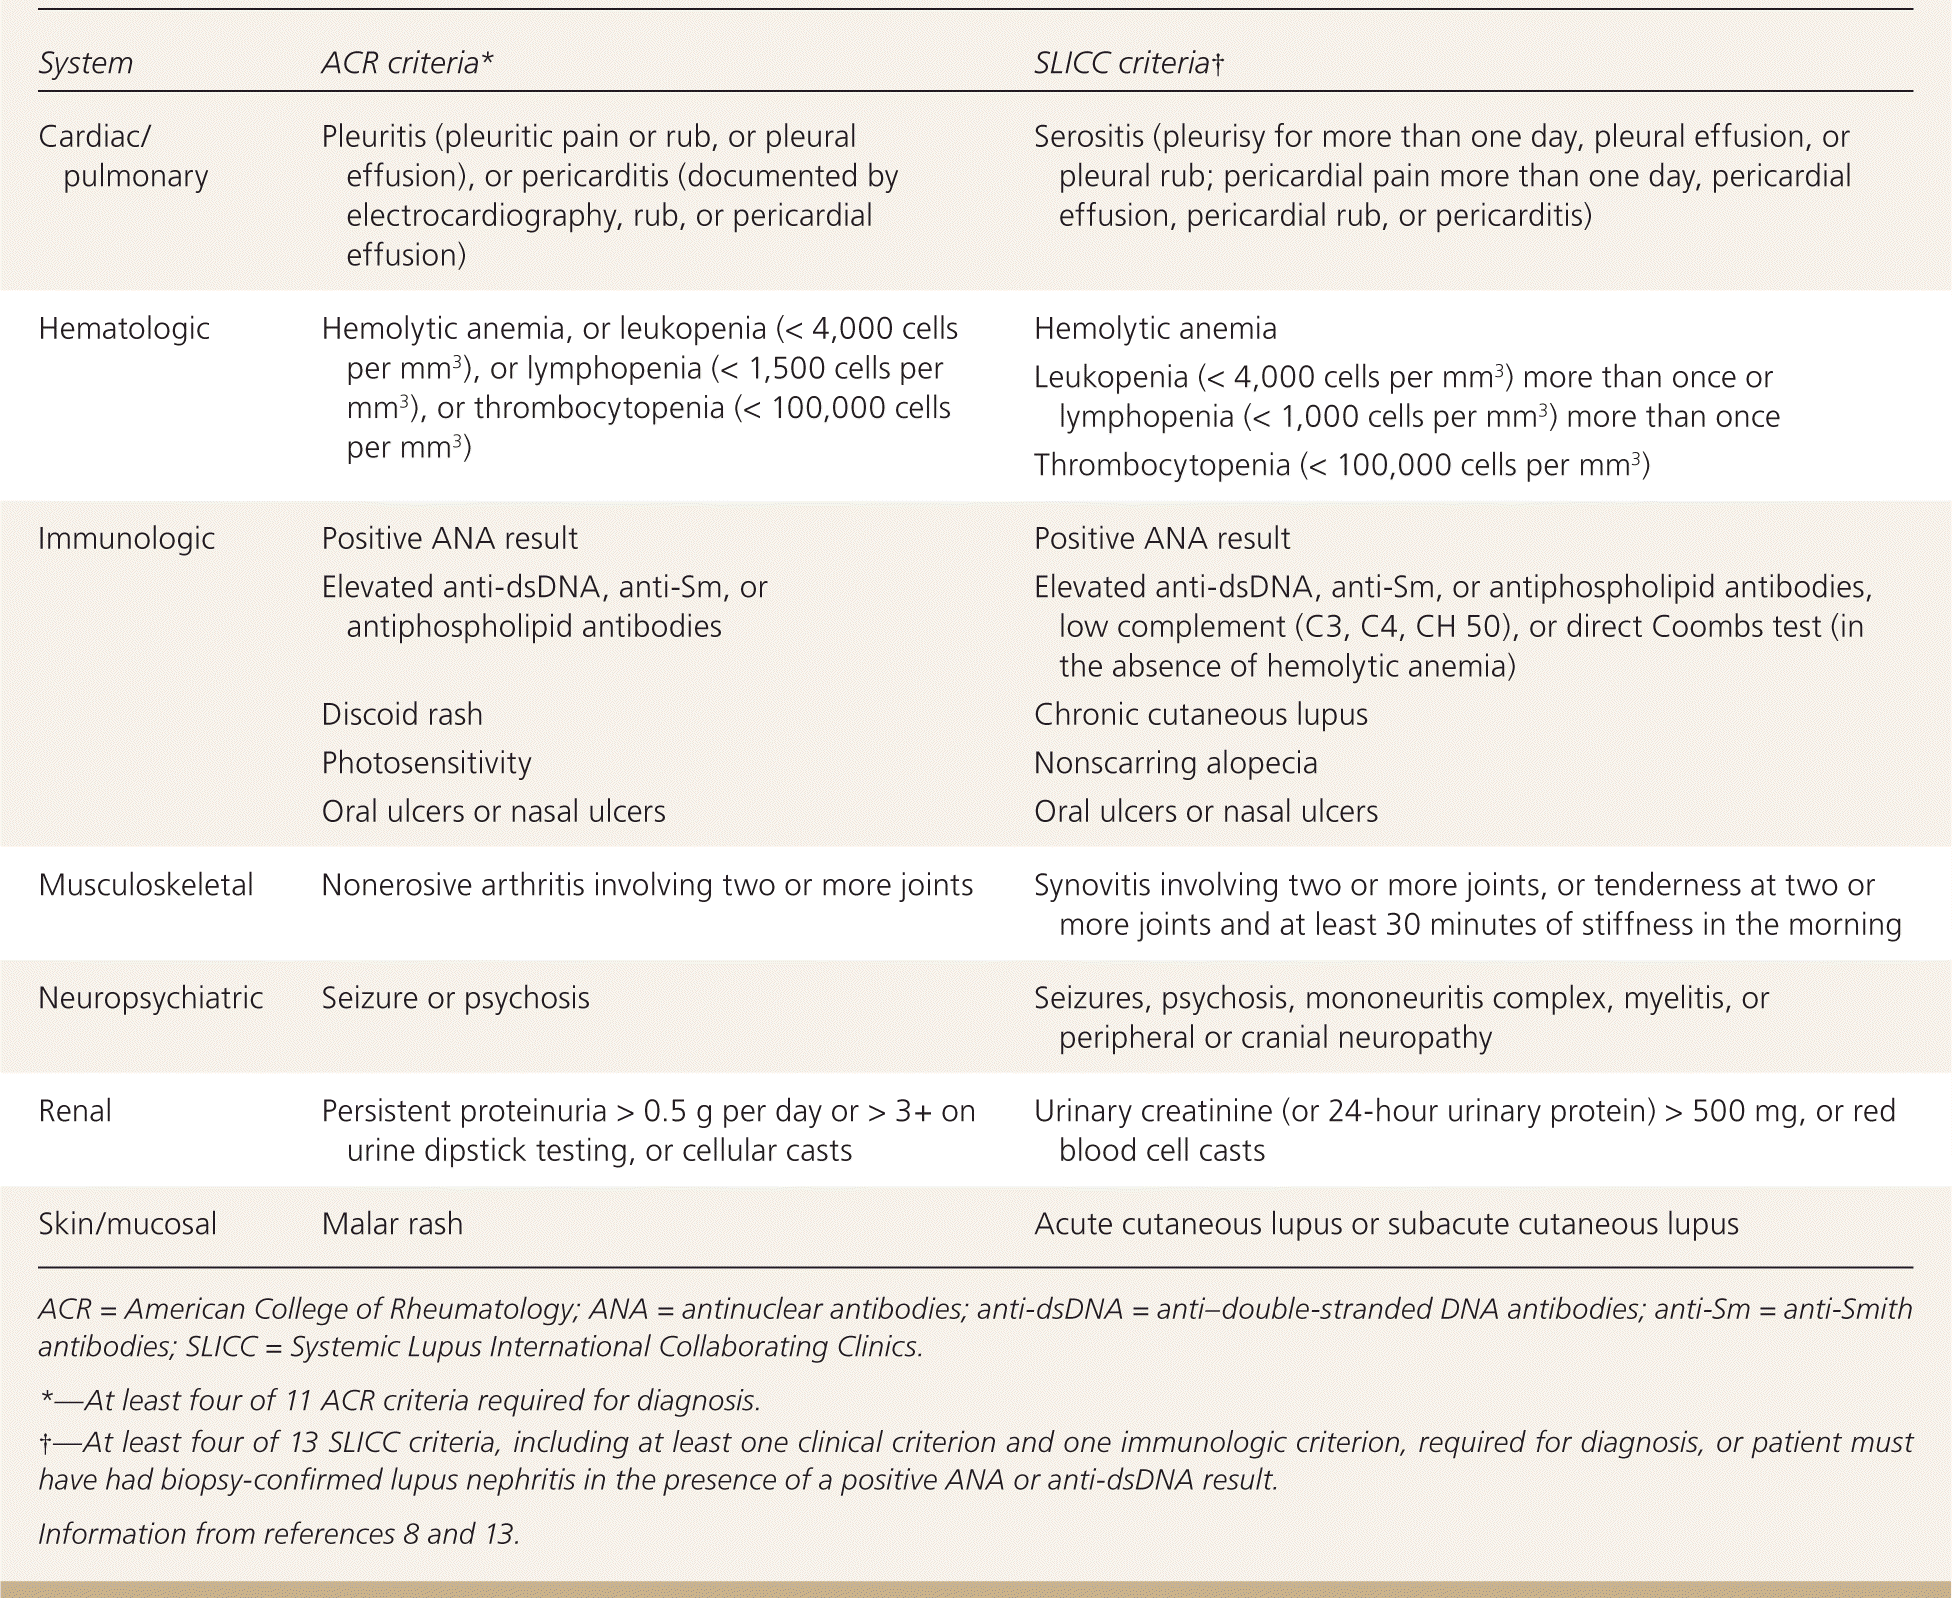 Diagnostic criteria for SLE